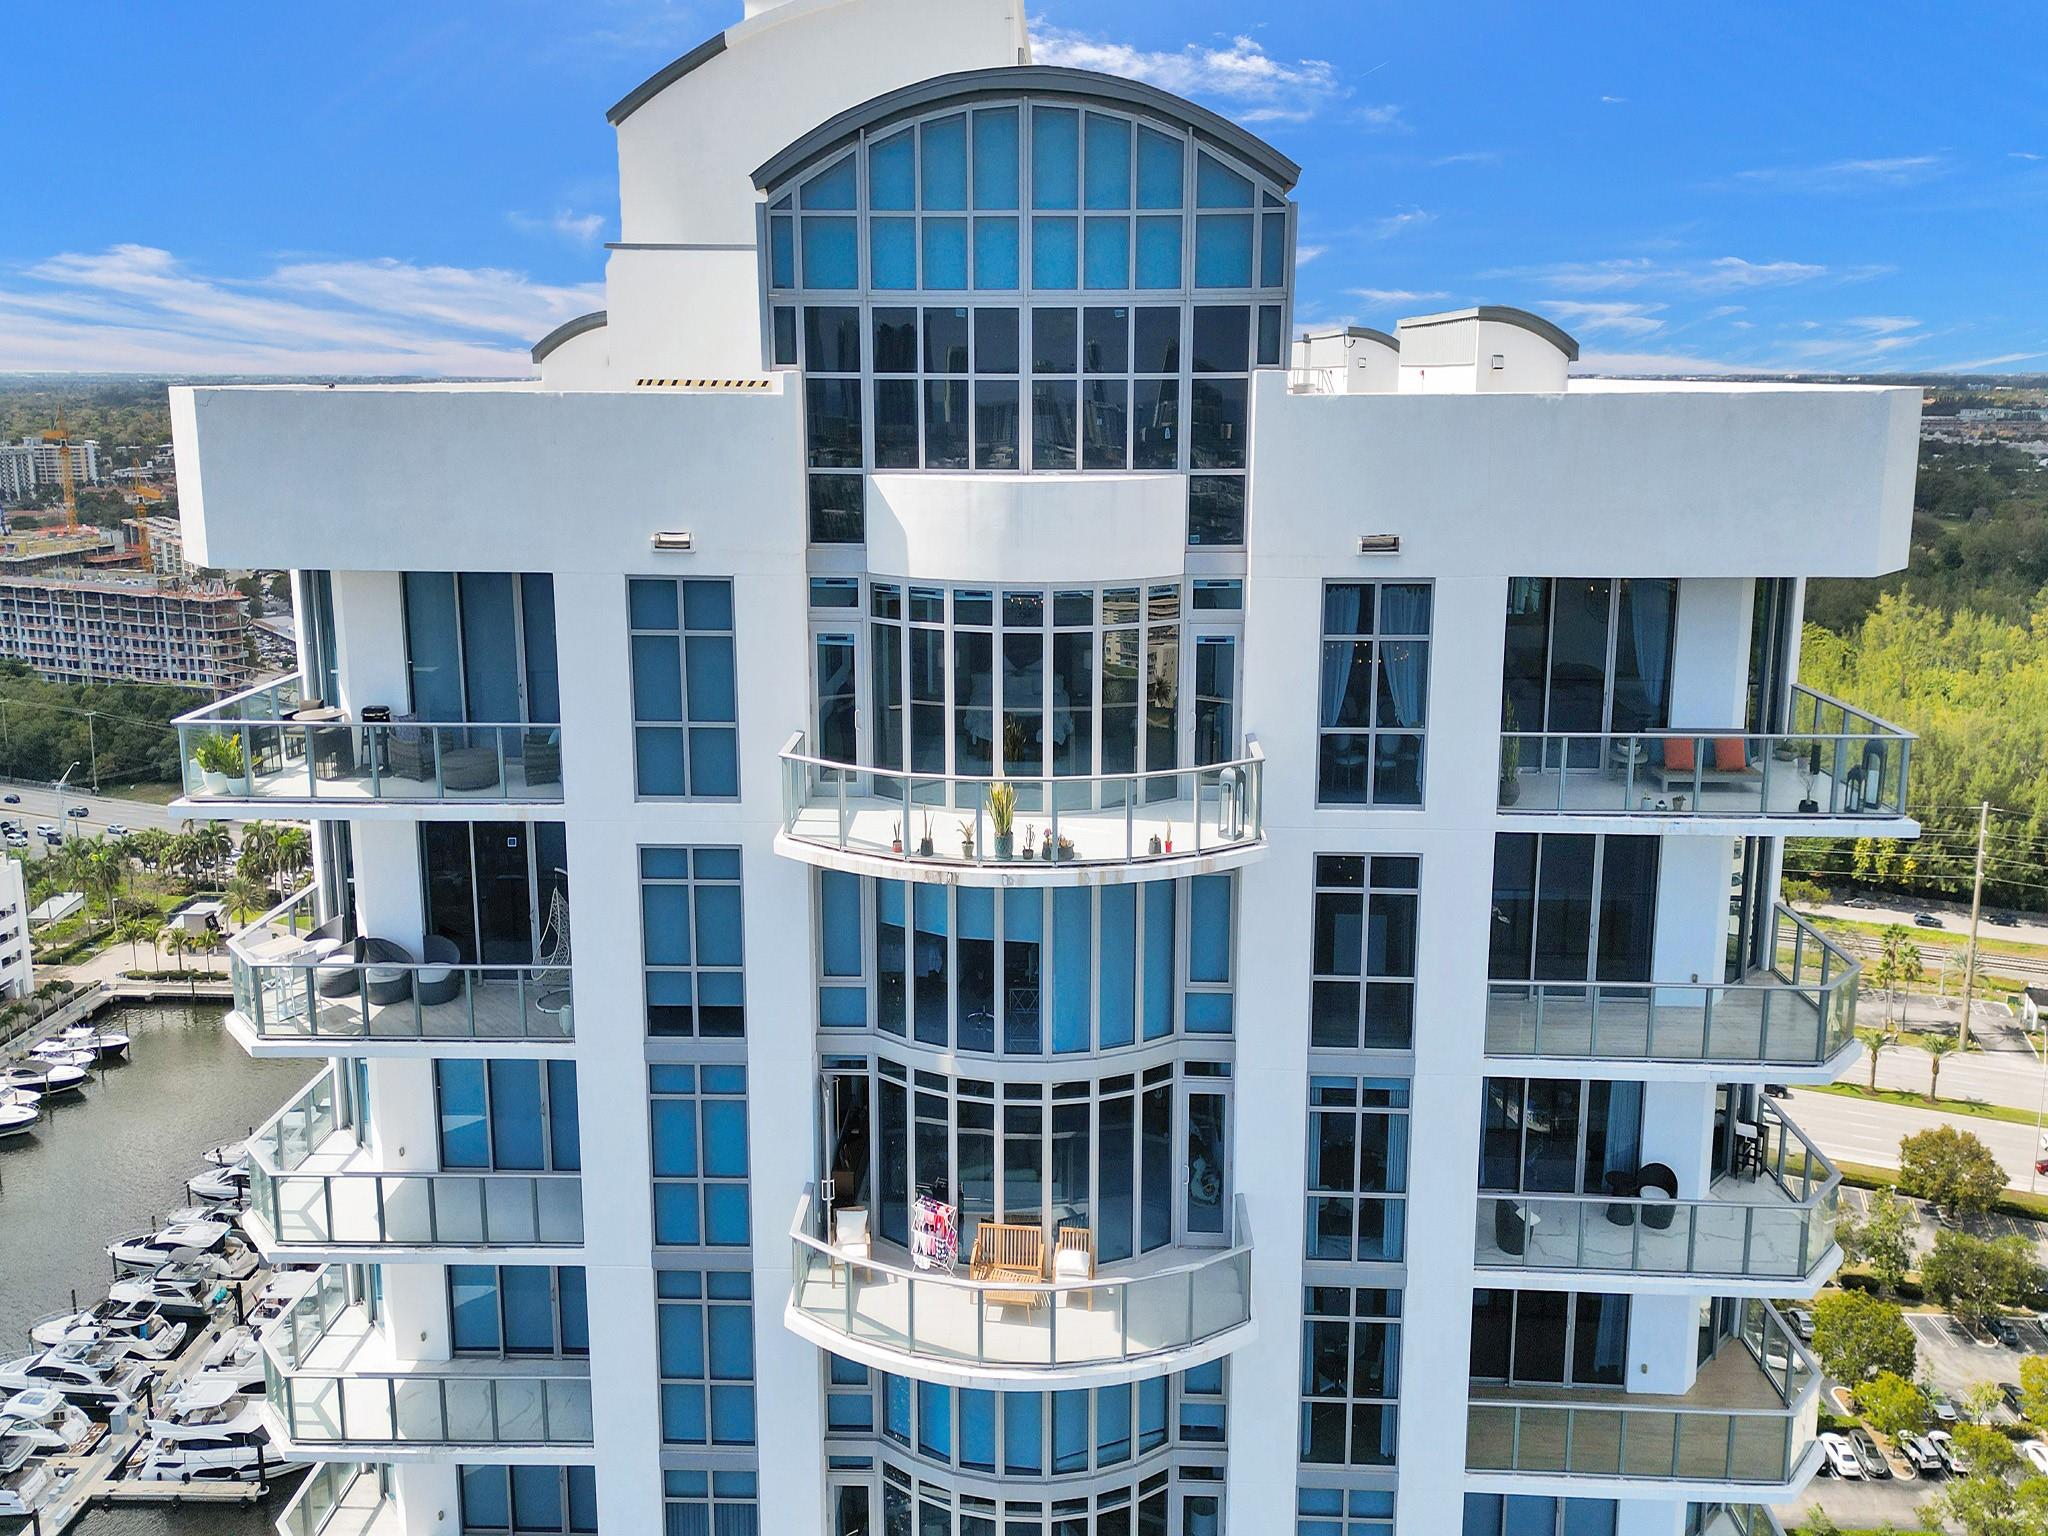 Condo for Rent in Aventura, FL